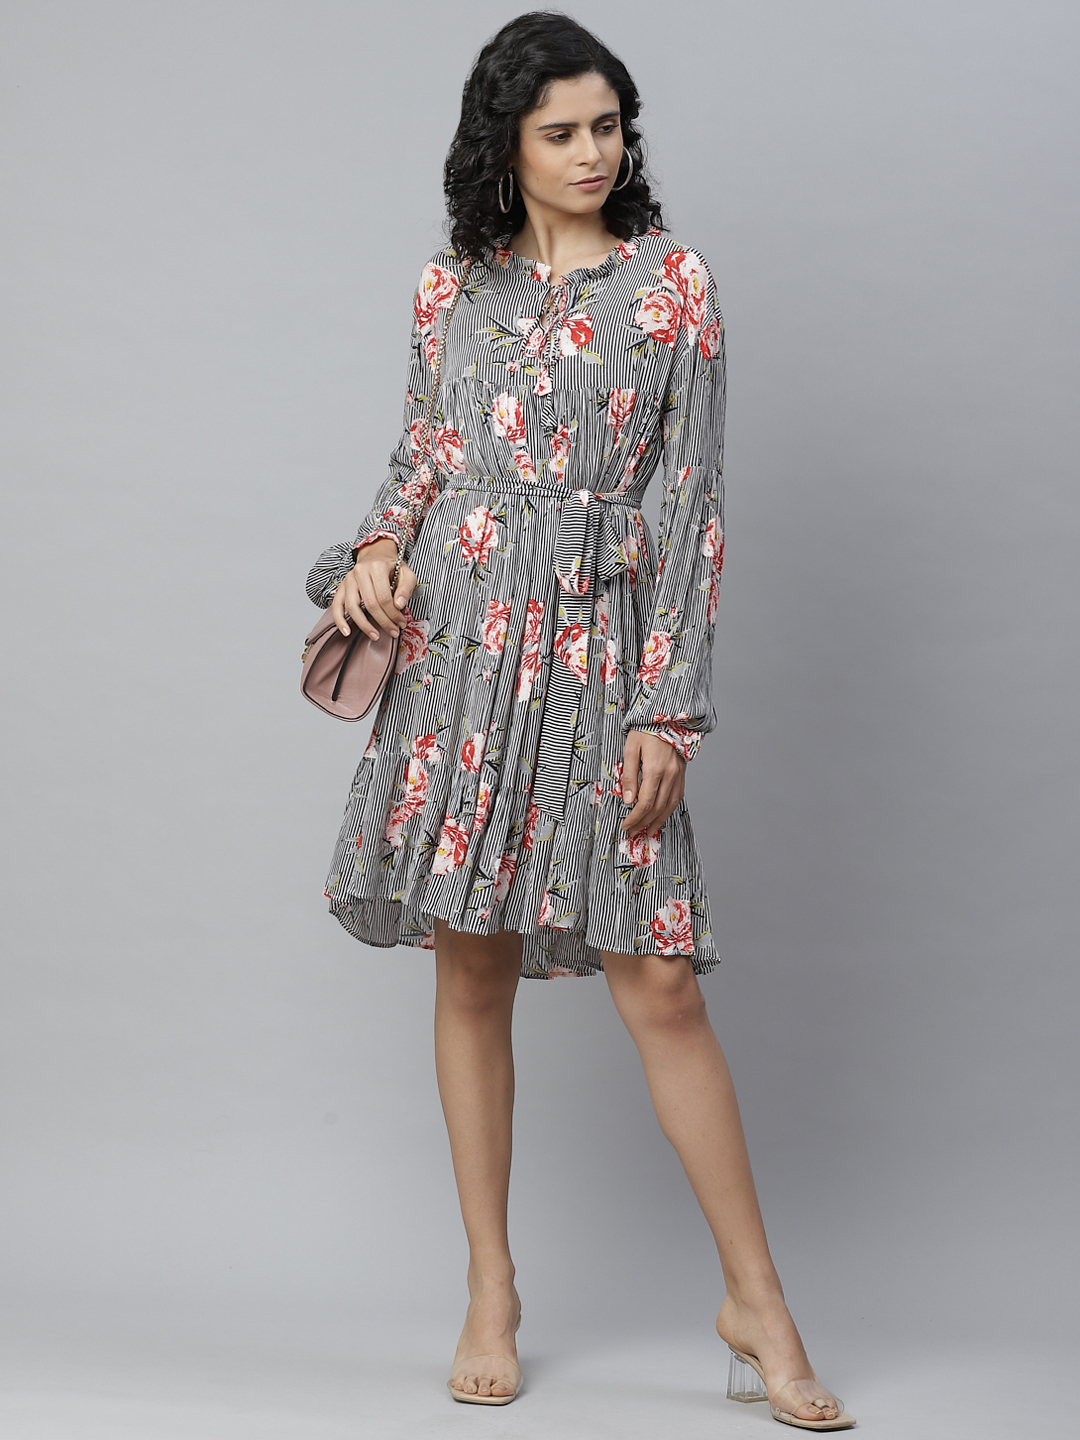 Floral Dresses | Floral Maxi & Midi Dresses | Coast